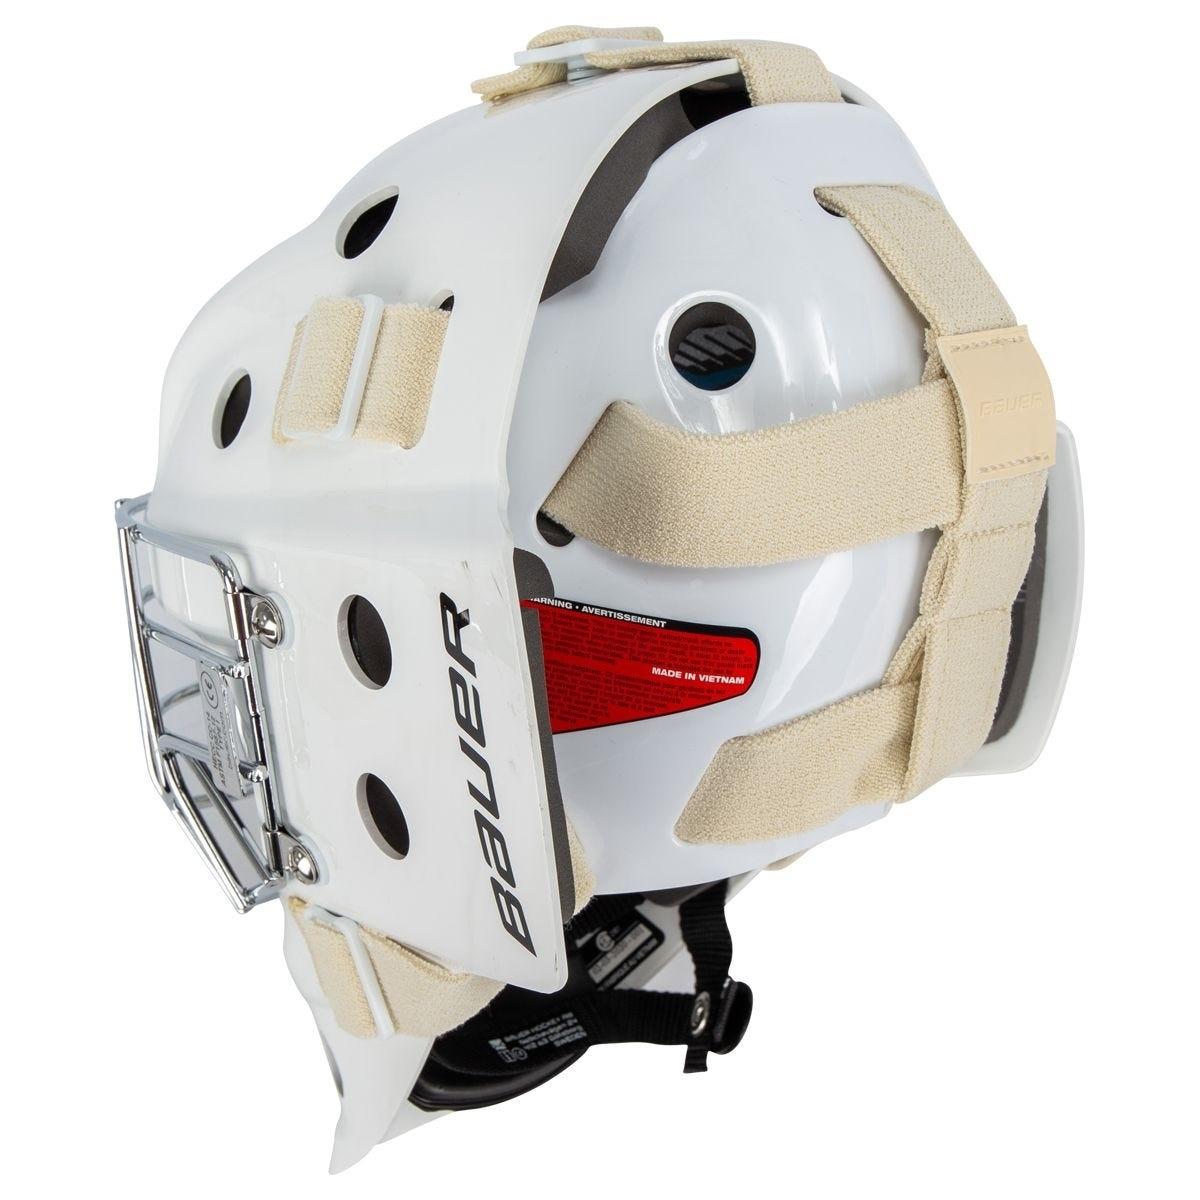 Bauer 930 Jr. Certified Goalie Maskproduct zoom image #4